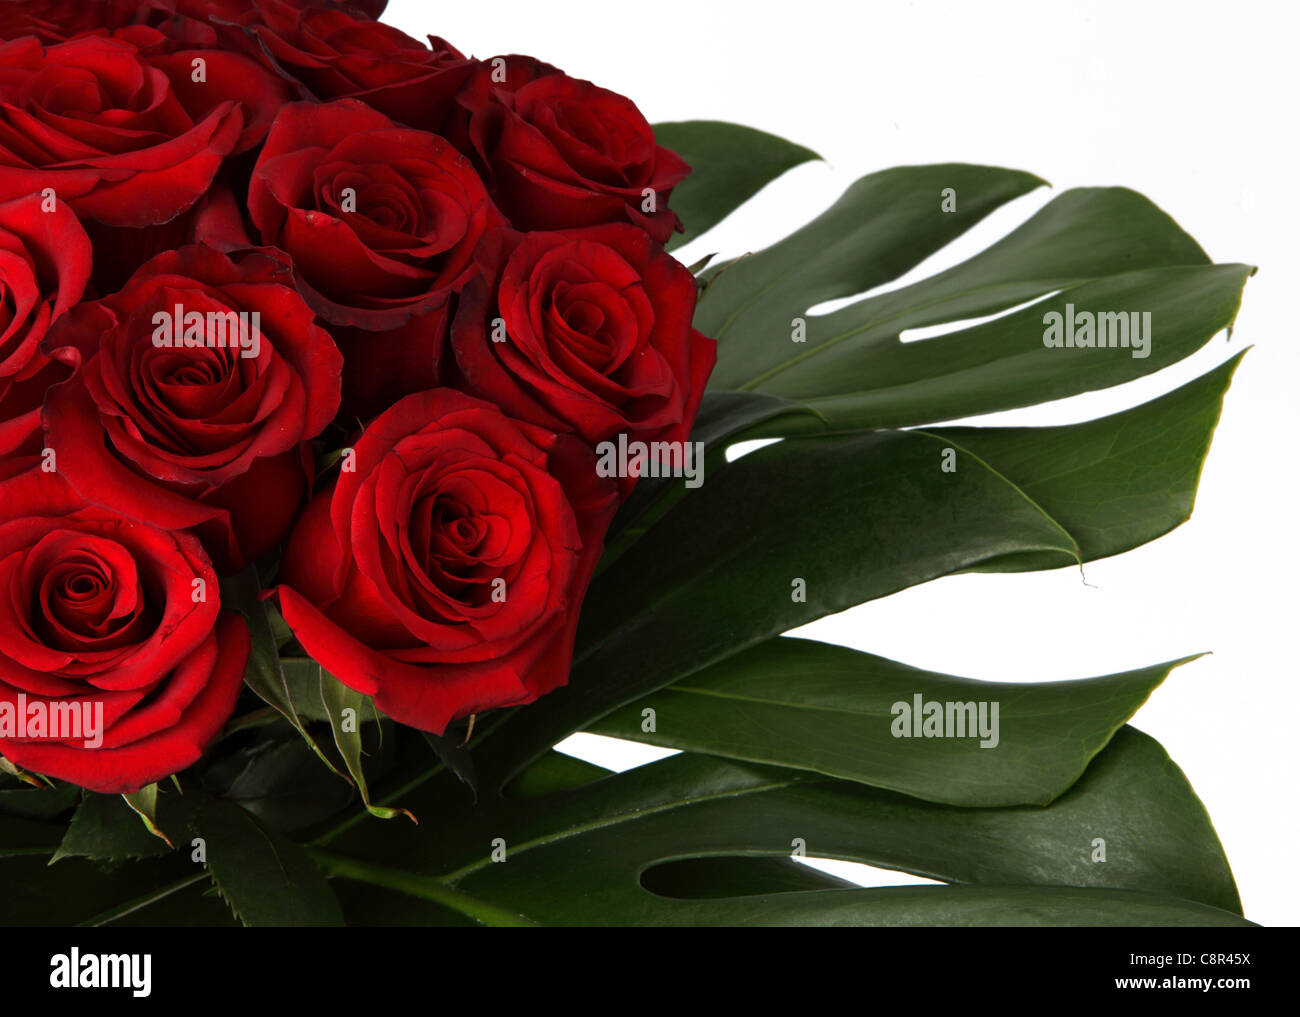 Eine Nahaufnahme von einem bunten Blumenstrauß. Rote Rosen und tropischen Blättern. Stockfoto